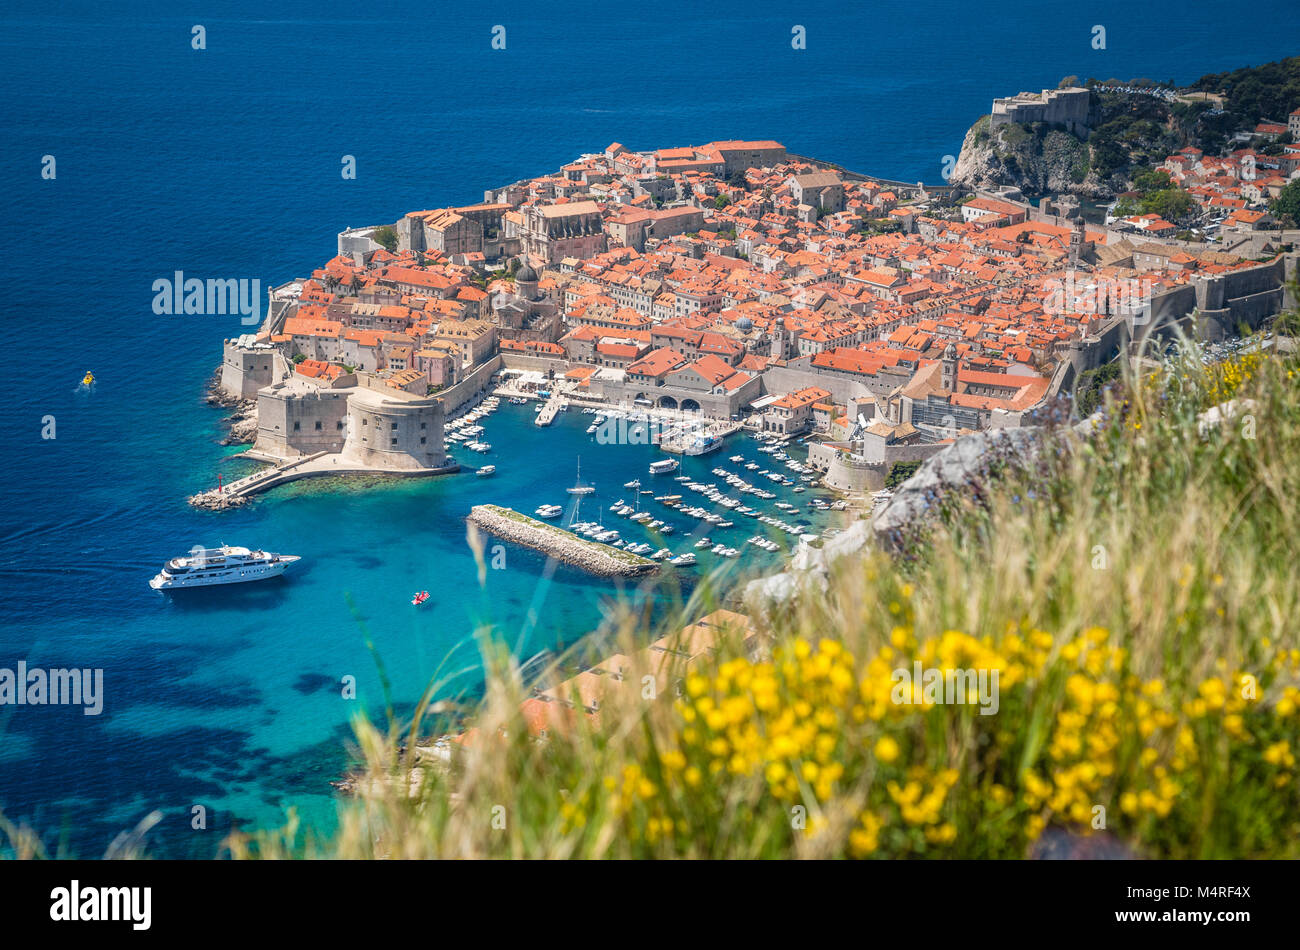 Luftbild der Altstadt von Dubrovnik, eines der bekanntesten touristischen Destinationen im Mittelmeer, von Srd Berg, Kroatien Stockfoto